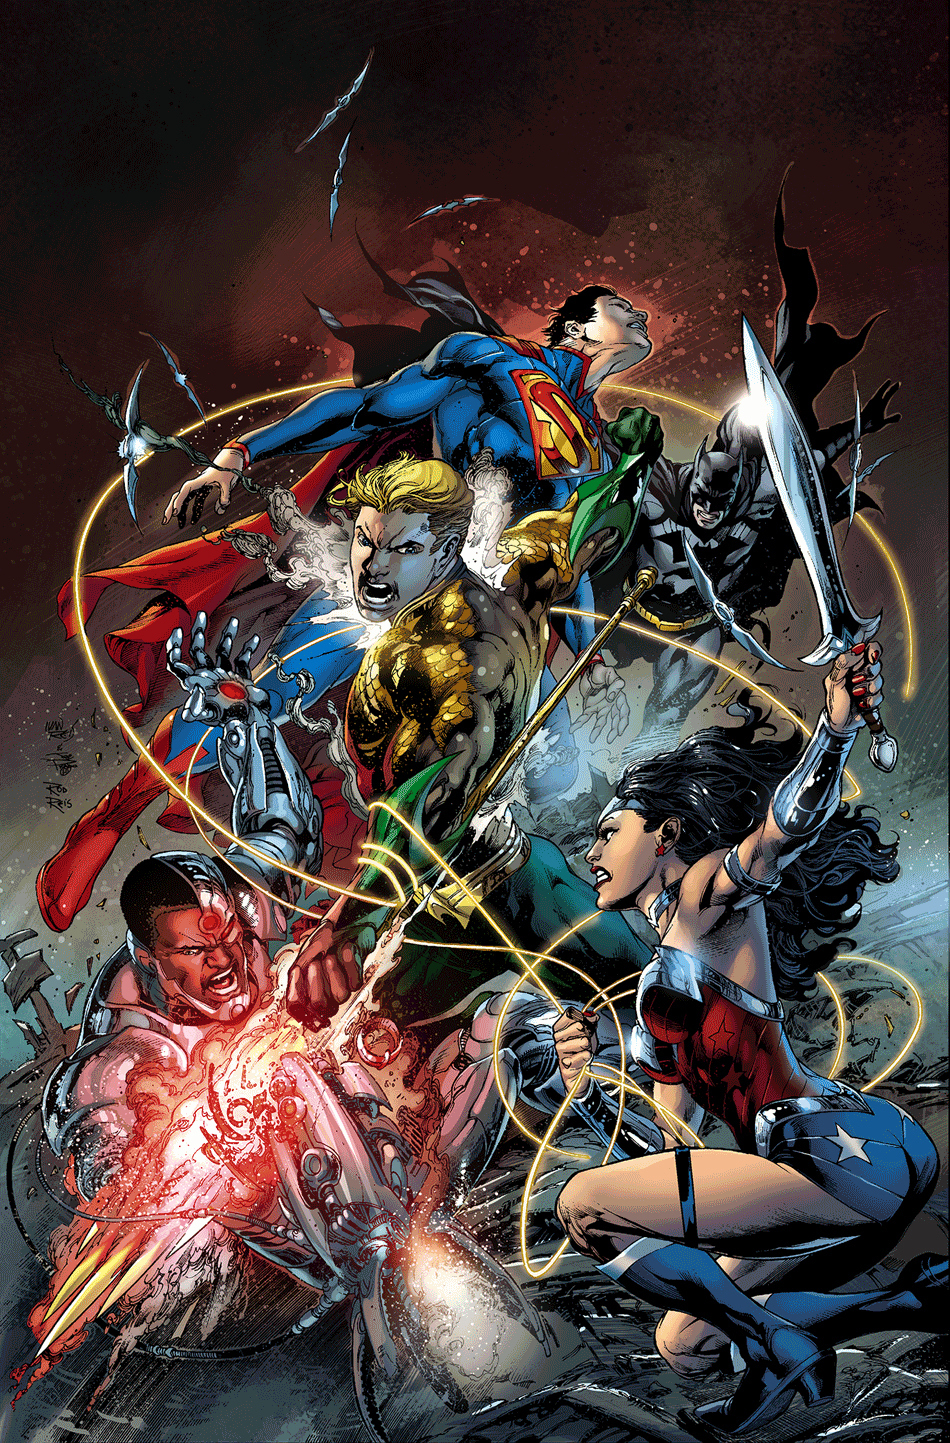 Justice League 16